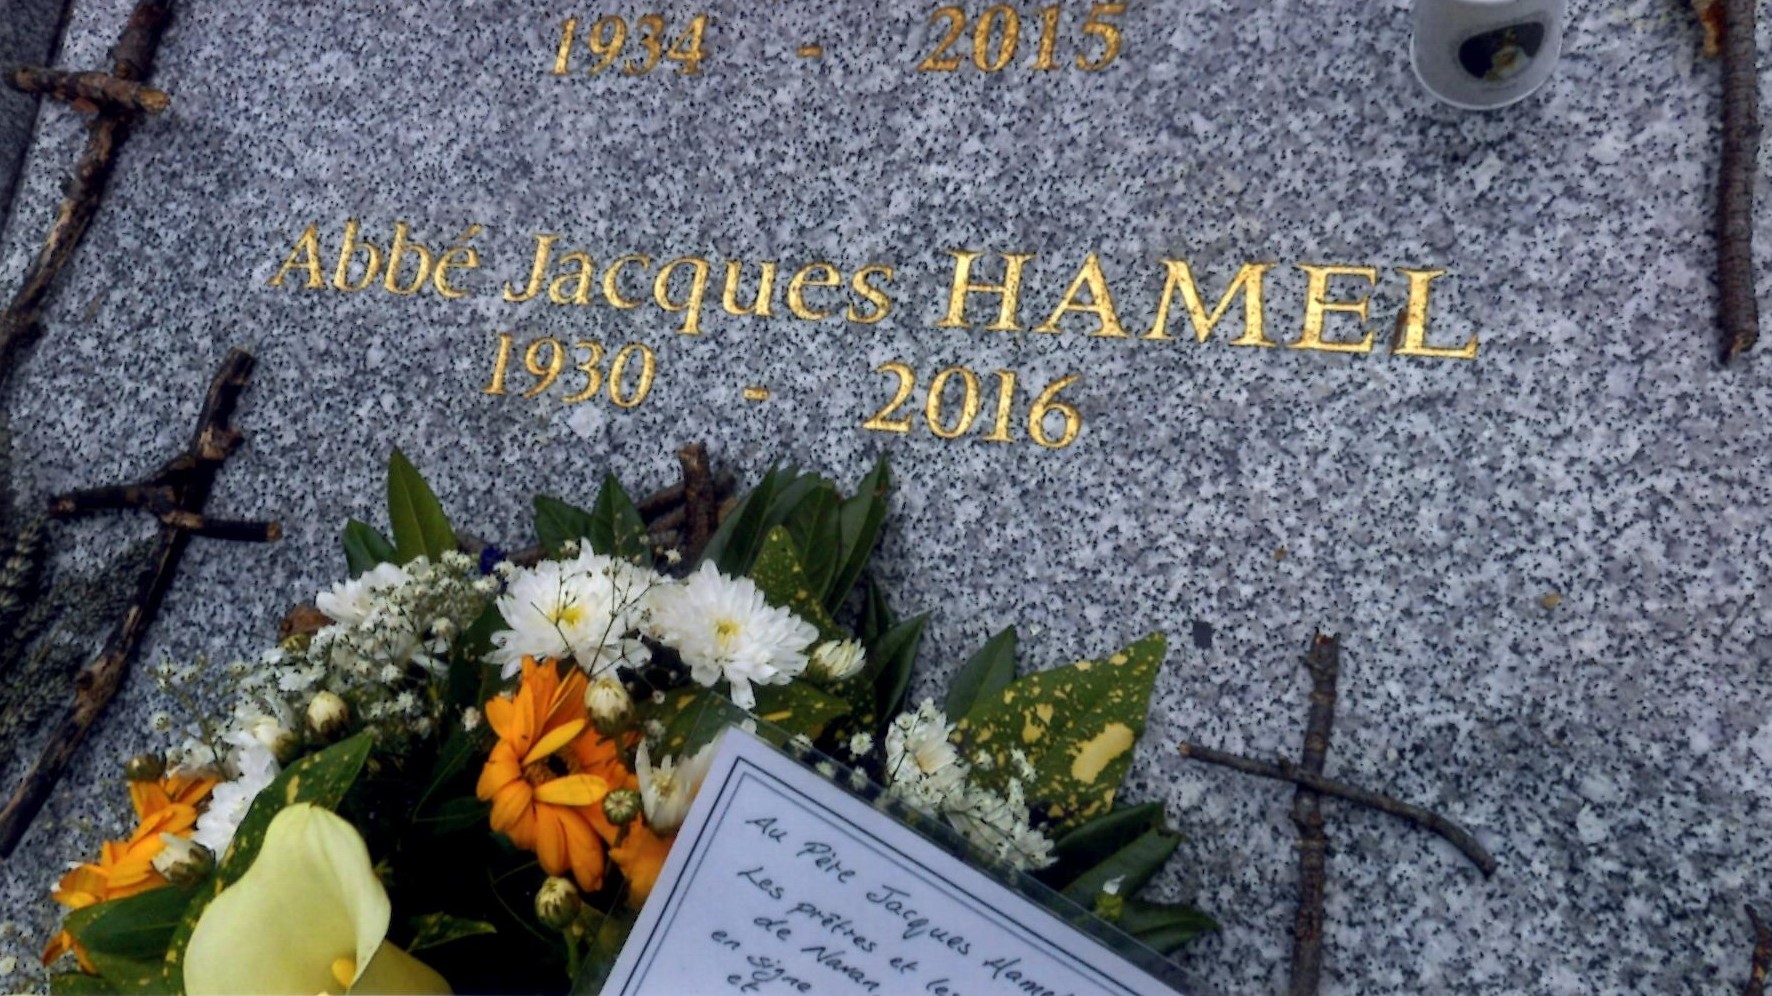 Jacques Hamel: Servant of God, Martyr